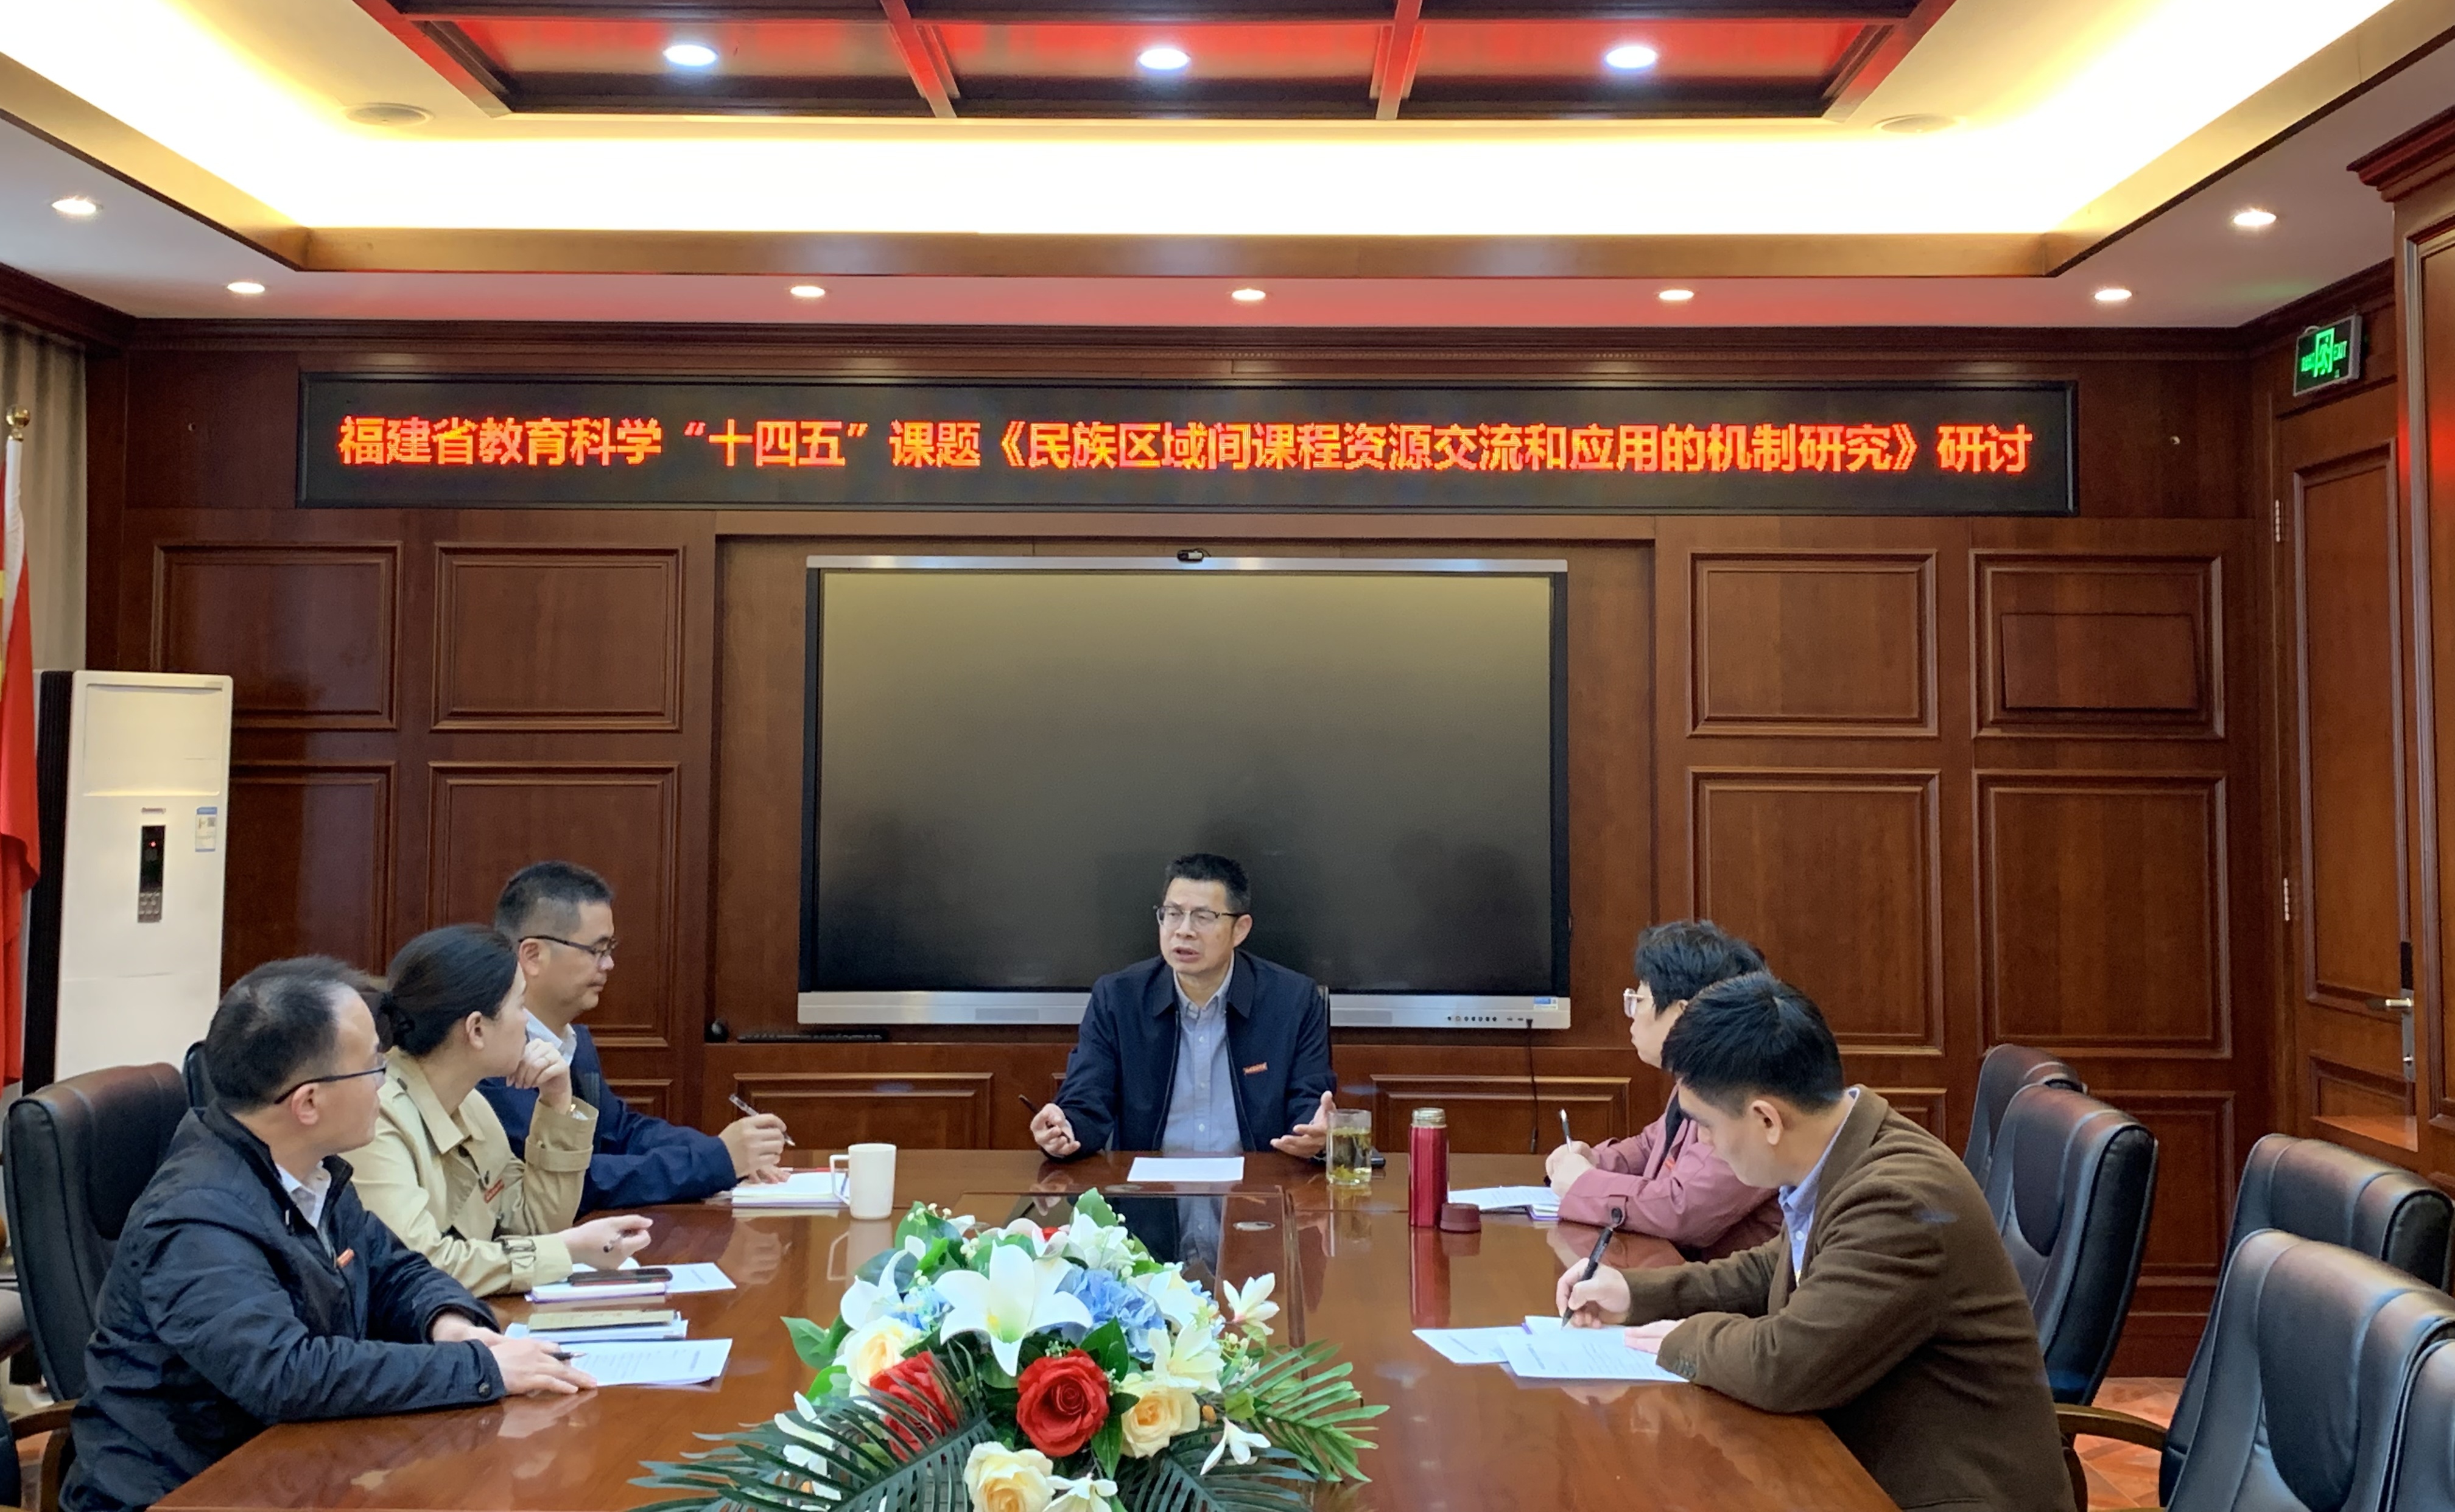 閩藏青三校協同《民族區域間課程資源交流和應用的機制研究》課題組開展研討活動